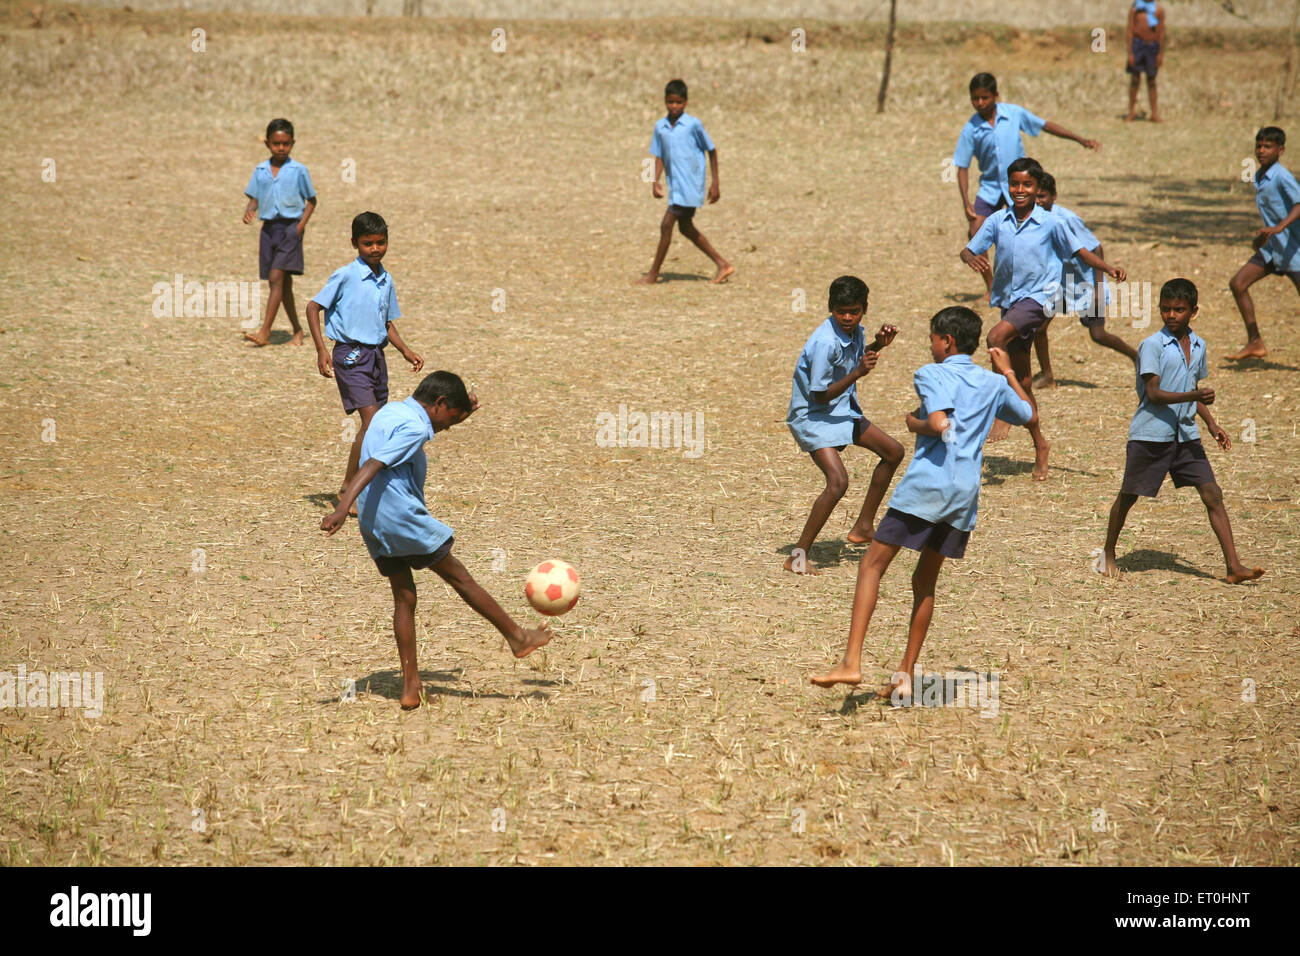 Garçons d'école, uniforme d'école, jouer au football, terrain de village, Jharkhand, Inde, sport rural indien Banque D'Images